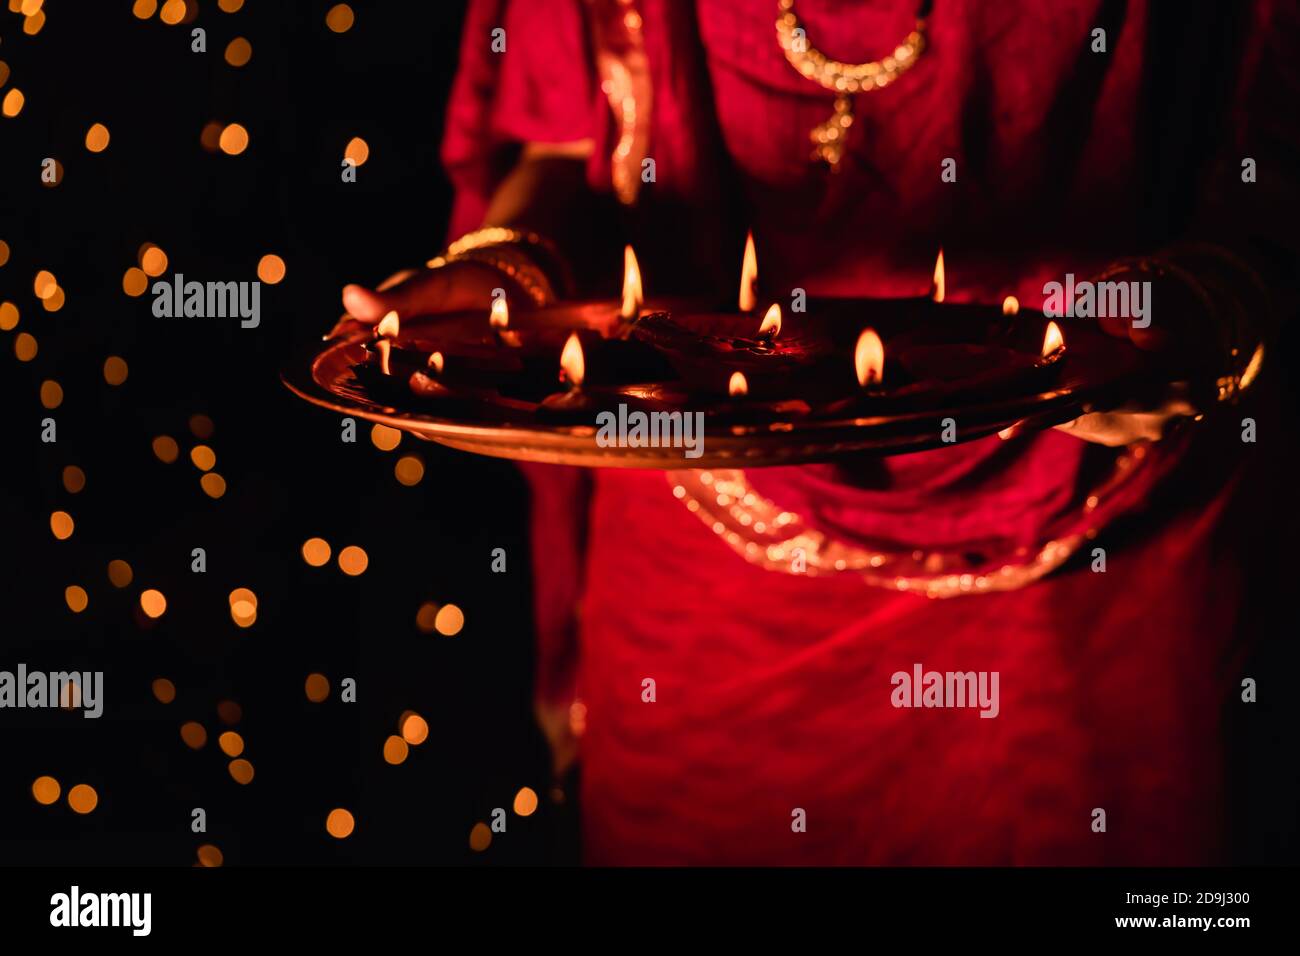 Femme indienne ou mariée portant une robe rouge traditionnelle et des bijoux, tenant puja thaali plein de lampes diya ou argile illuminées, célébrant Diwali la nuit. Banque D'Images